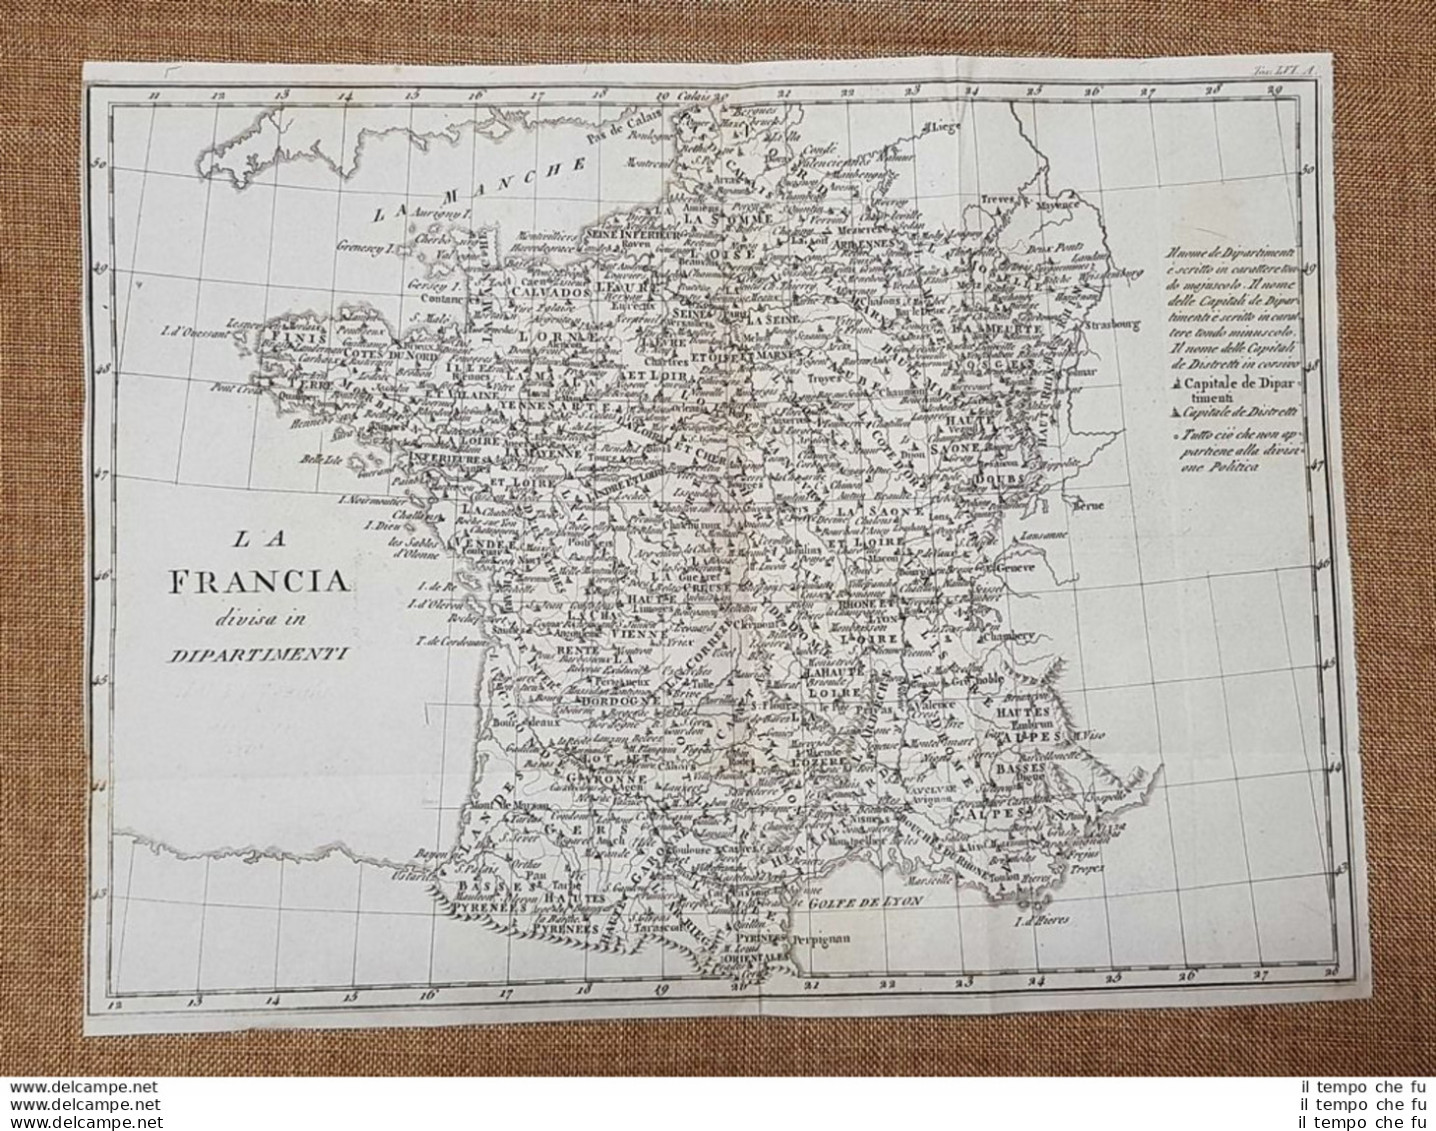 Carta Geografica O Mappa Francia Divisa In Dipartimenti Leonardo Cacciatore 1831 - Landkarten